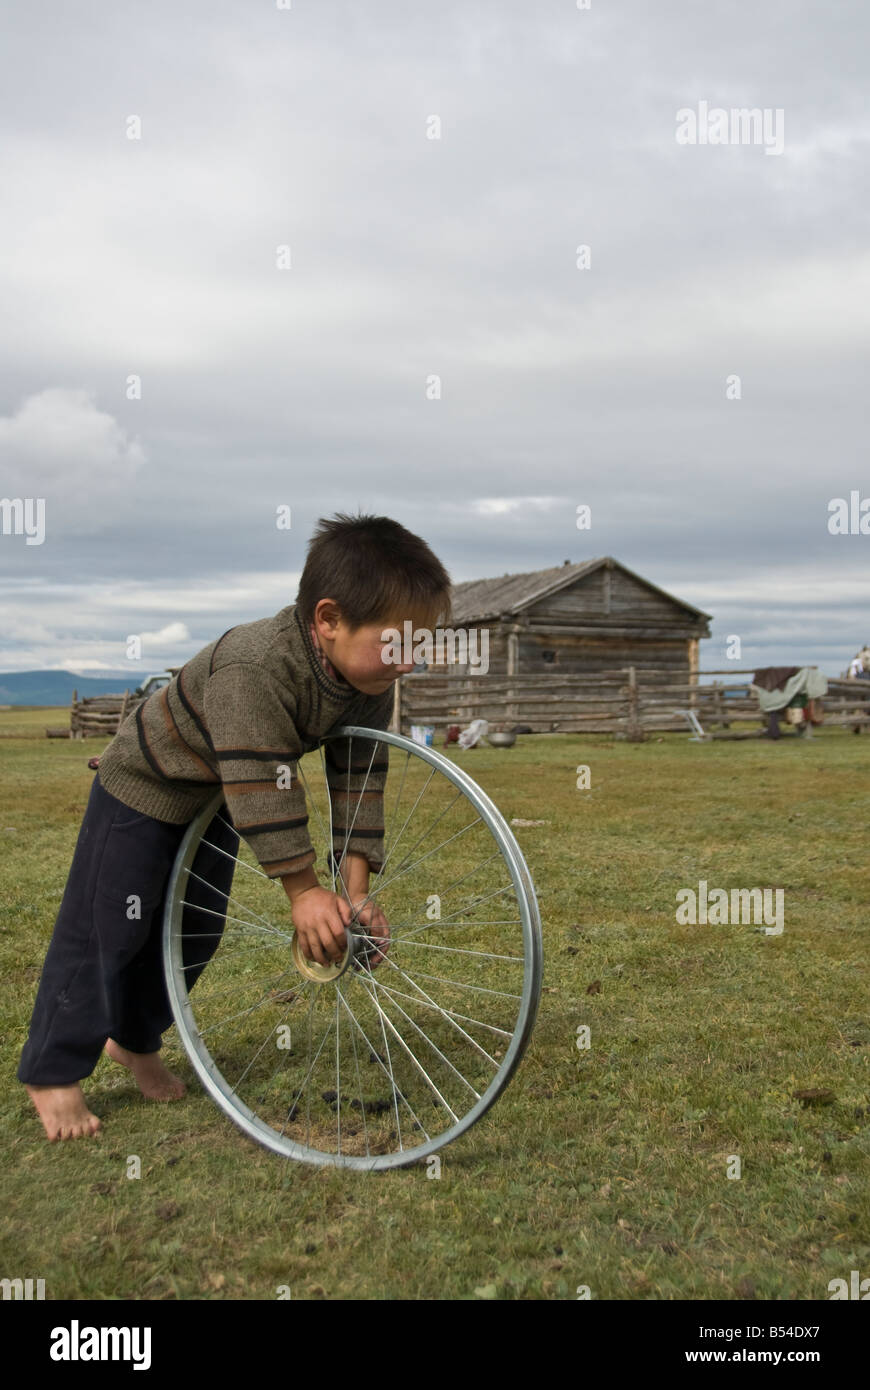 Enfant jouant avec une roue le nord de la Mongolie Banque D'Images